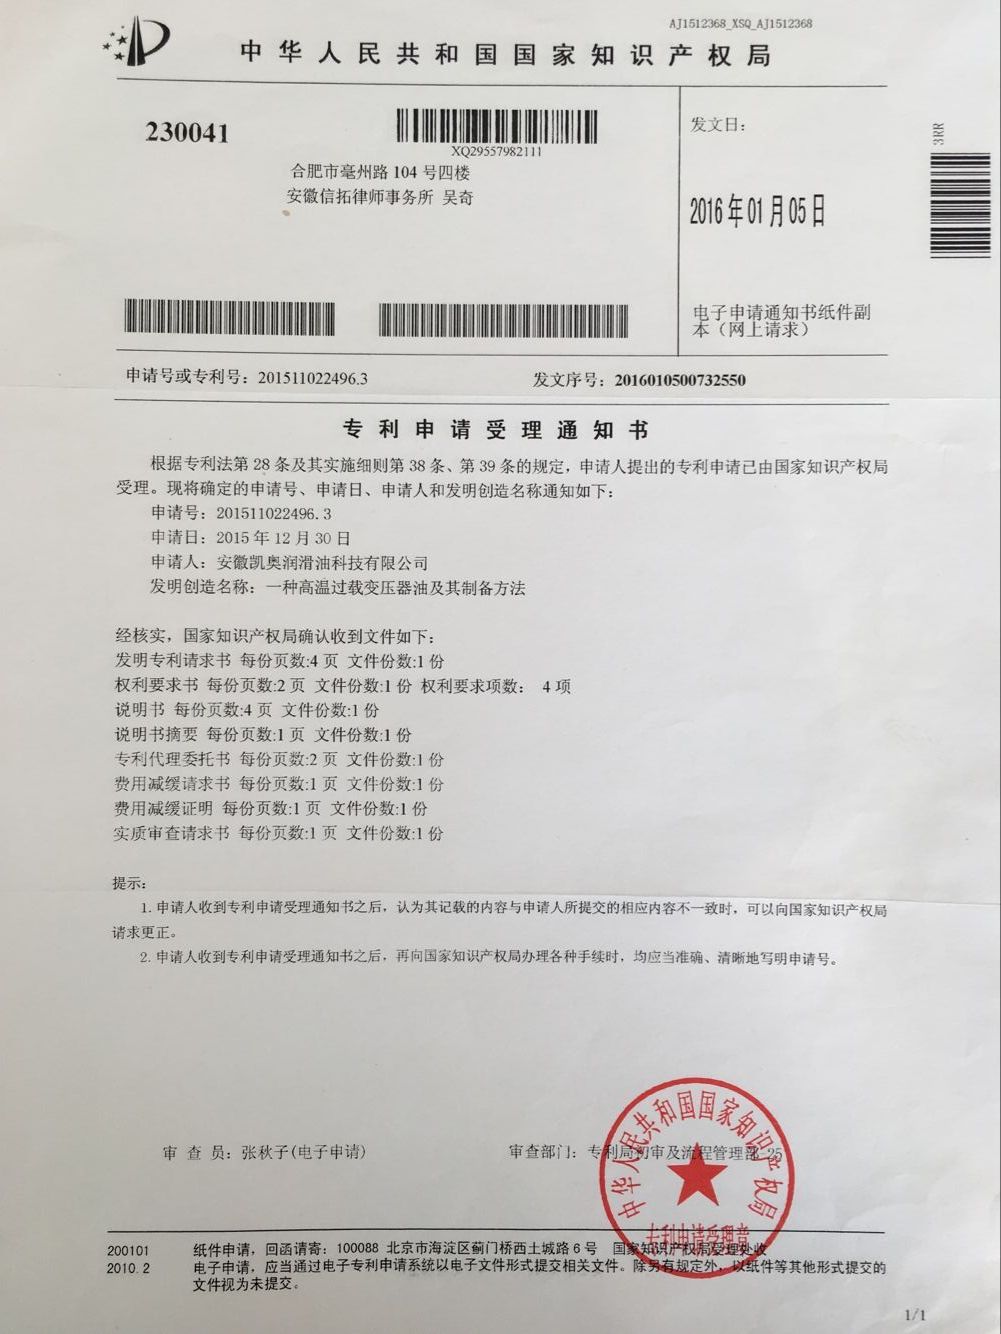 凯奥变压器油专利申请受理通知201511022496.3